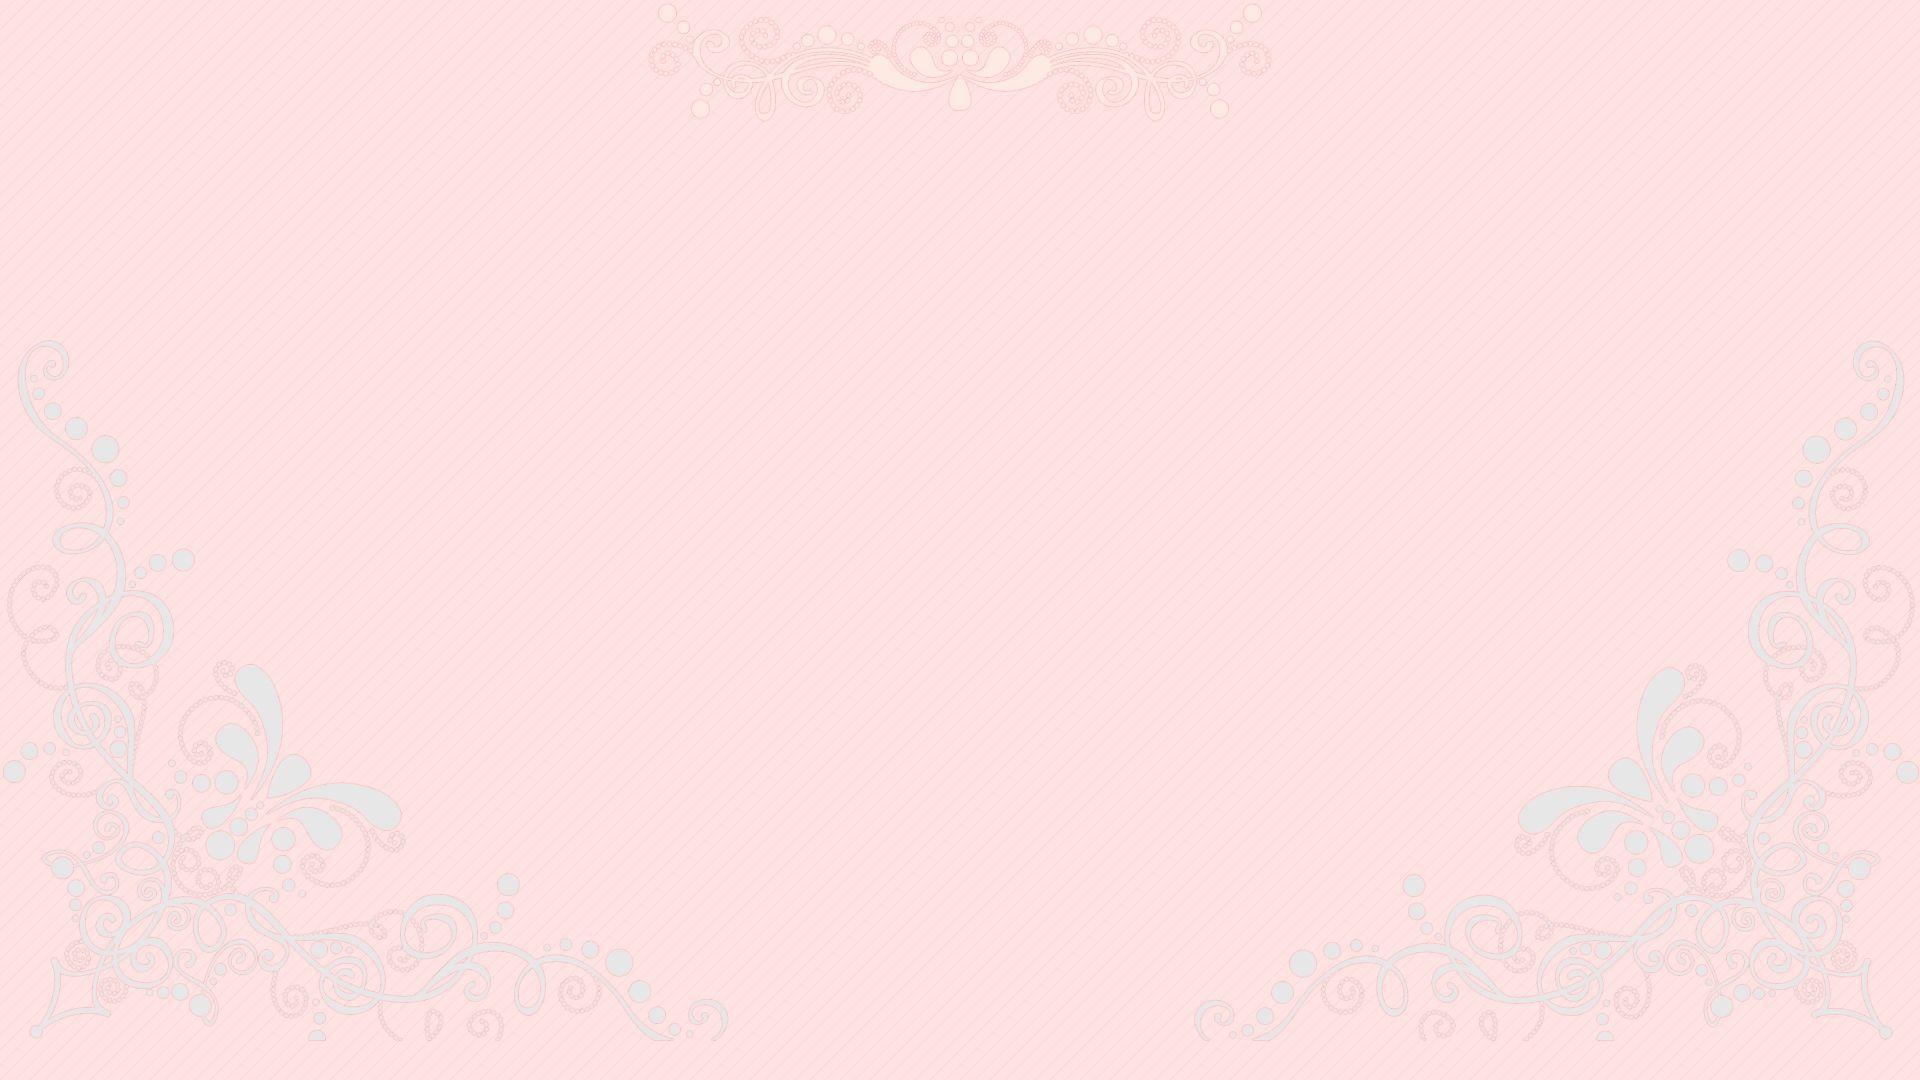 Pastel Pink Aesthetic Desktop Wallpaper Free Pastel Pink Aesthetic Desktop Background